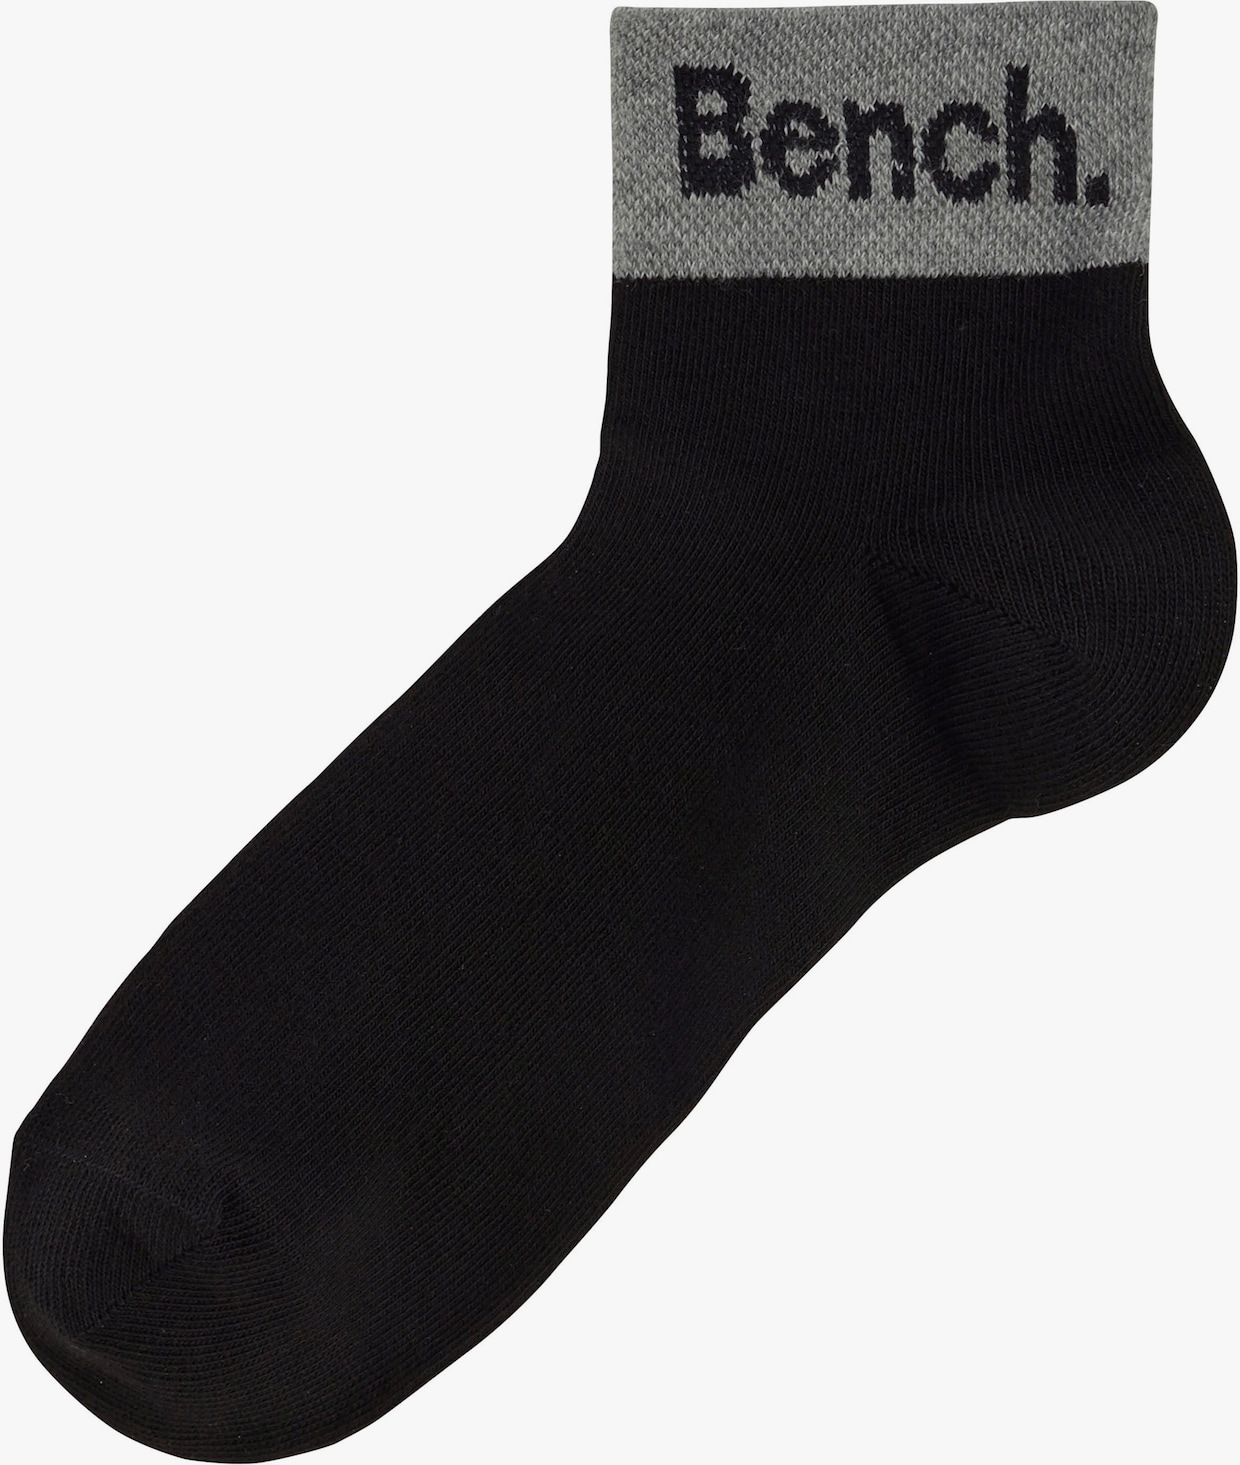 Bench. Socquettes - noir